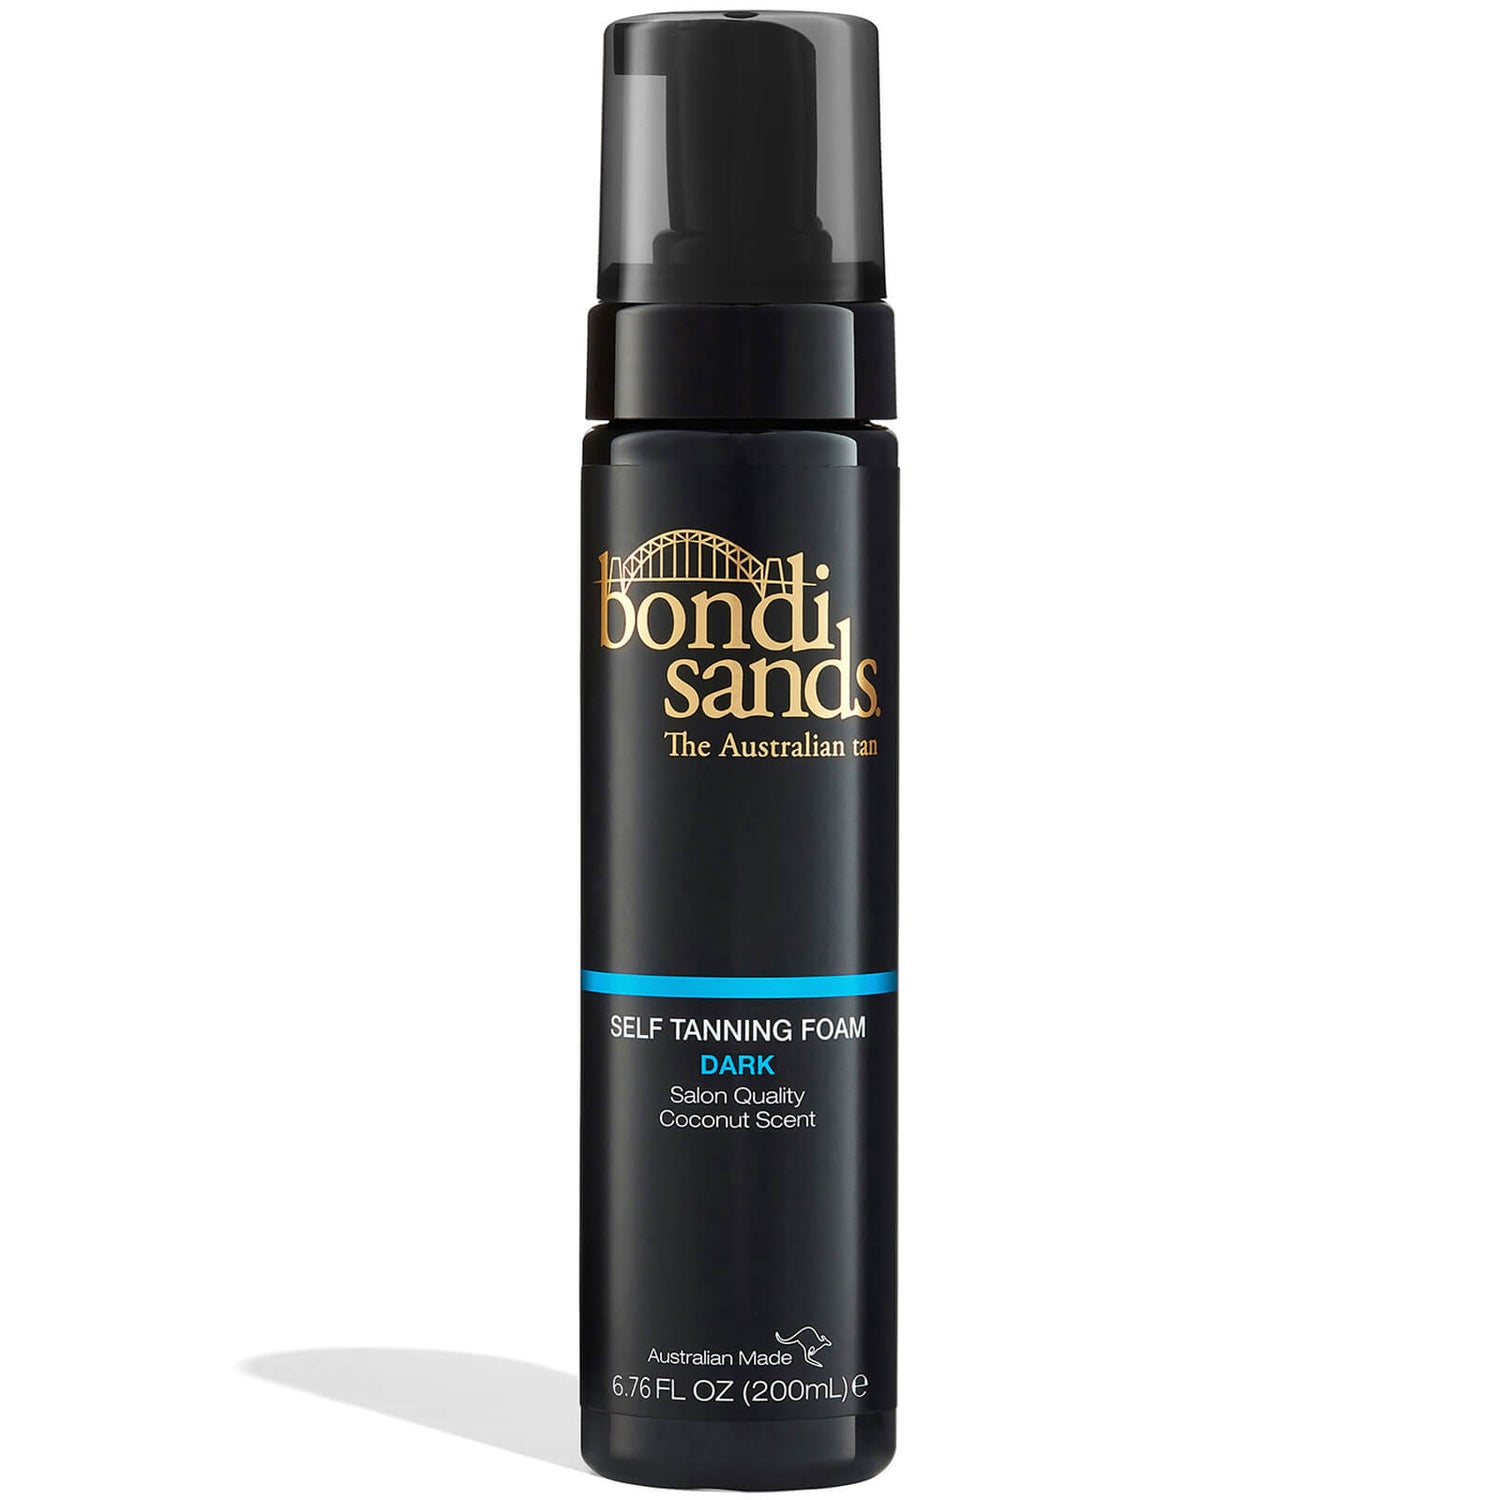 Bondi Sands Self Tanning Foam pianka samoopalająca 200 ml – Dark